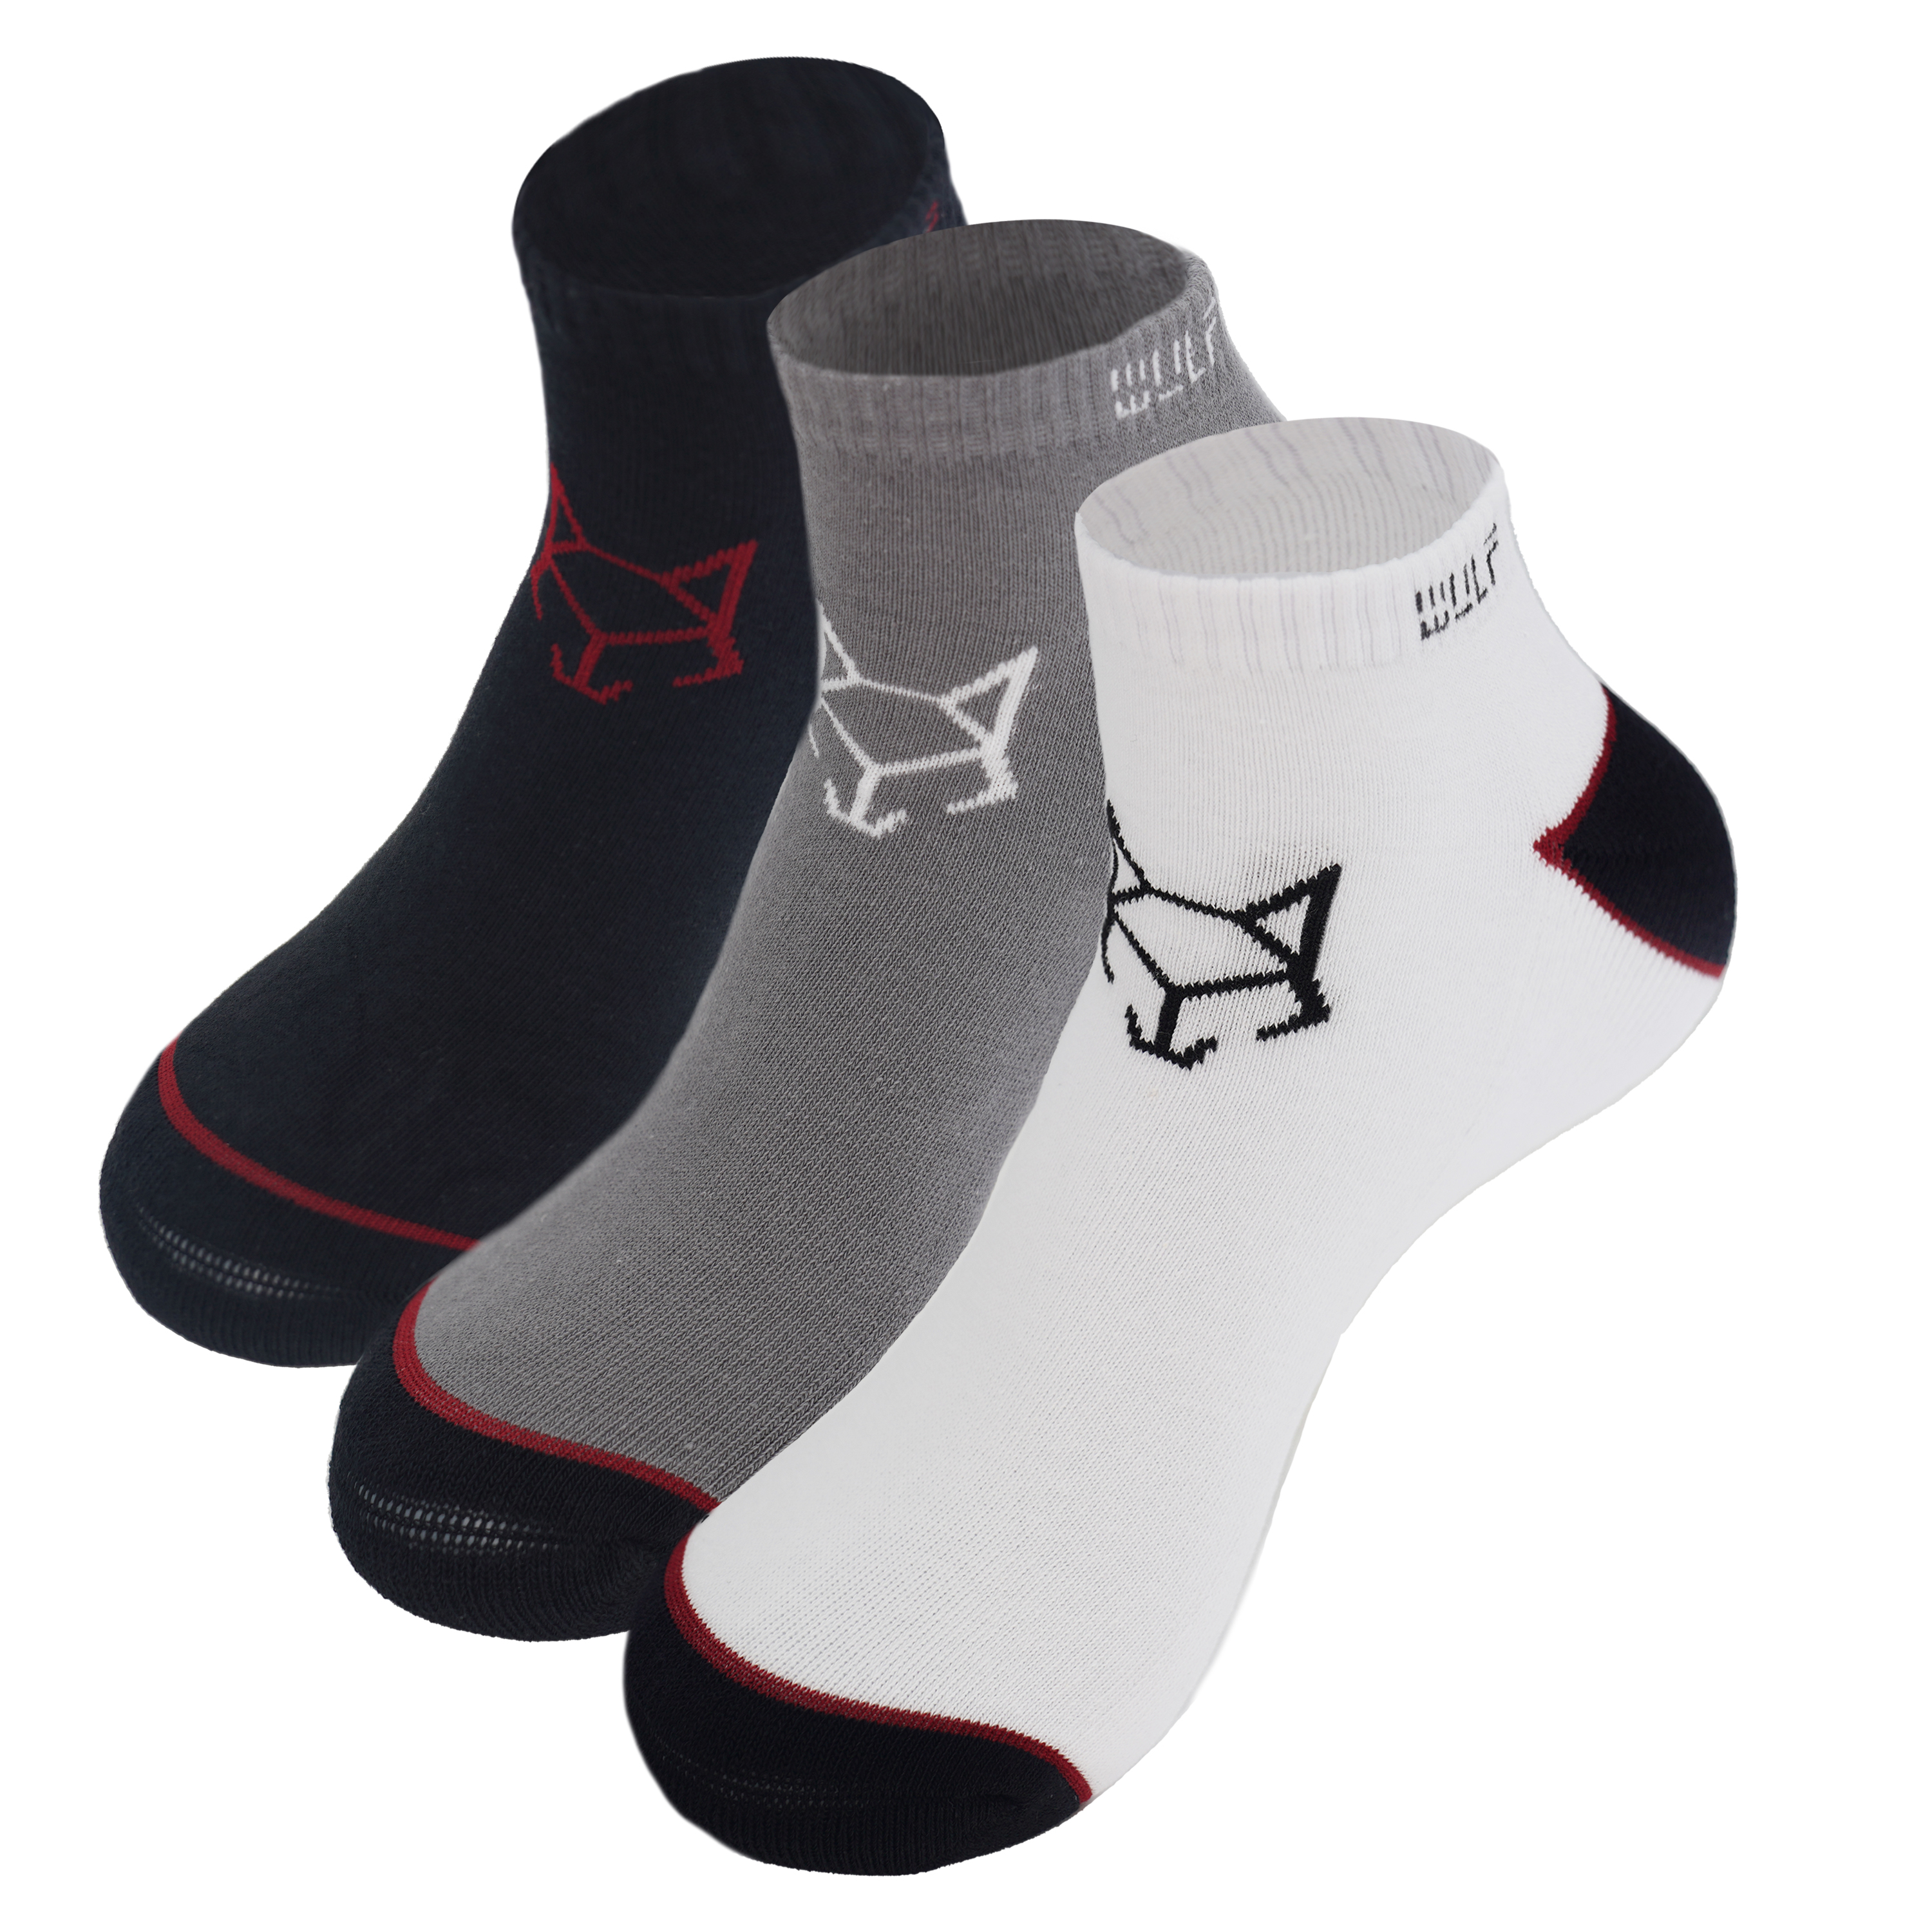 Men's Cushioned Ankle Socks - White